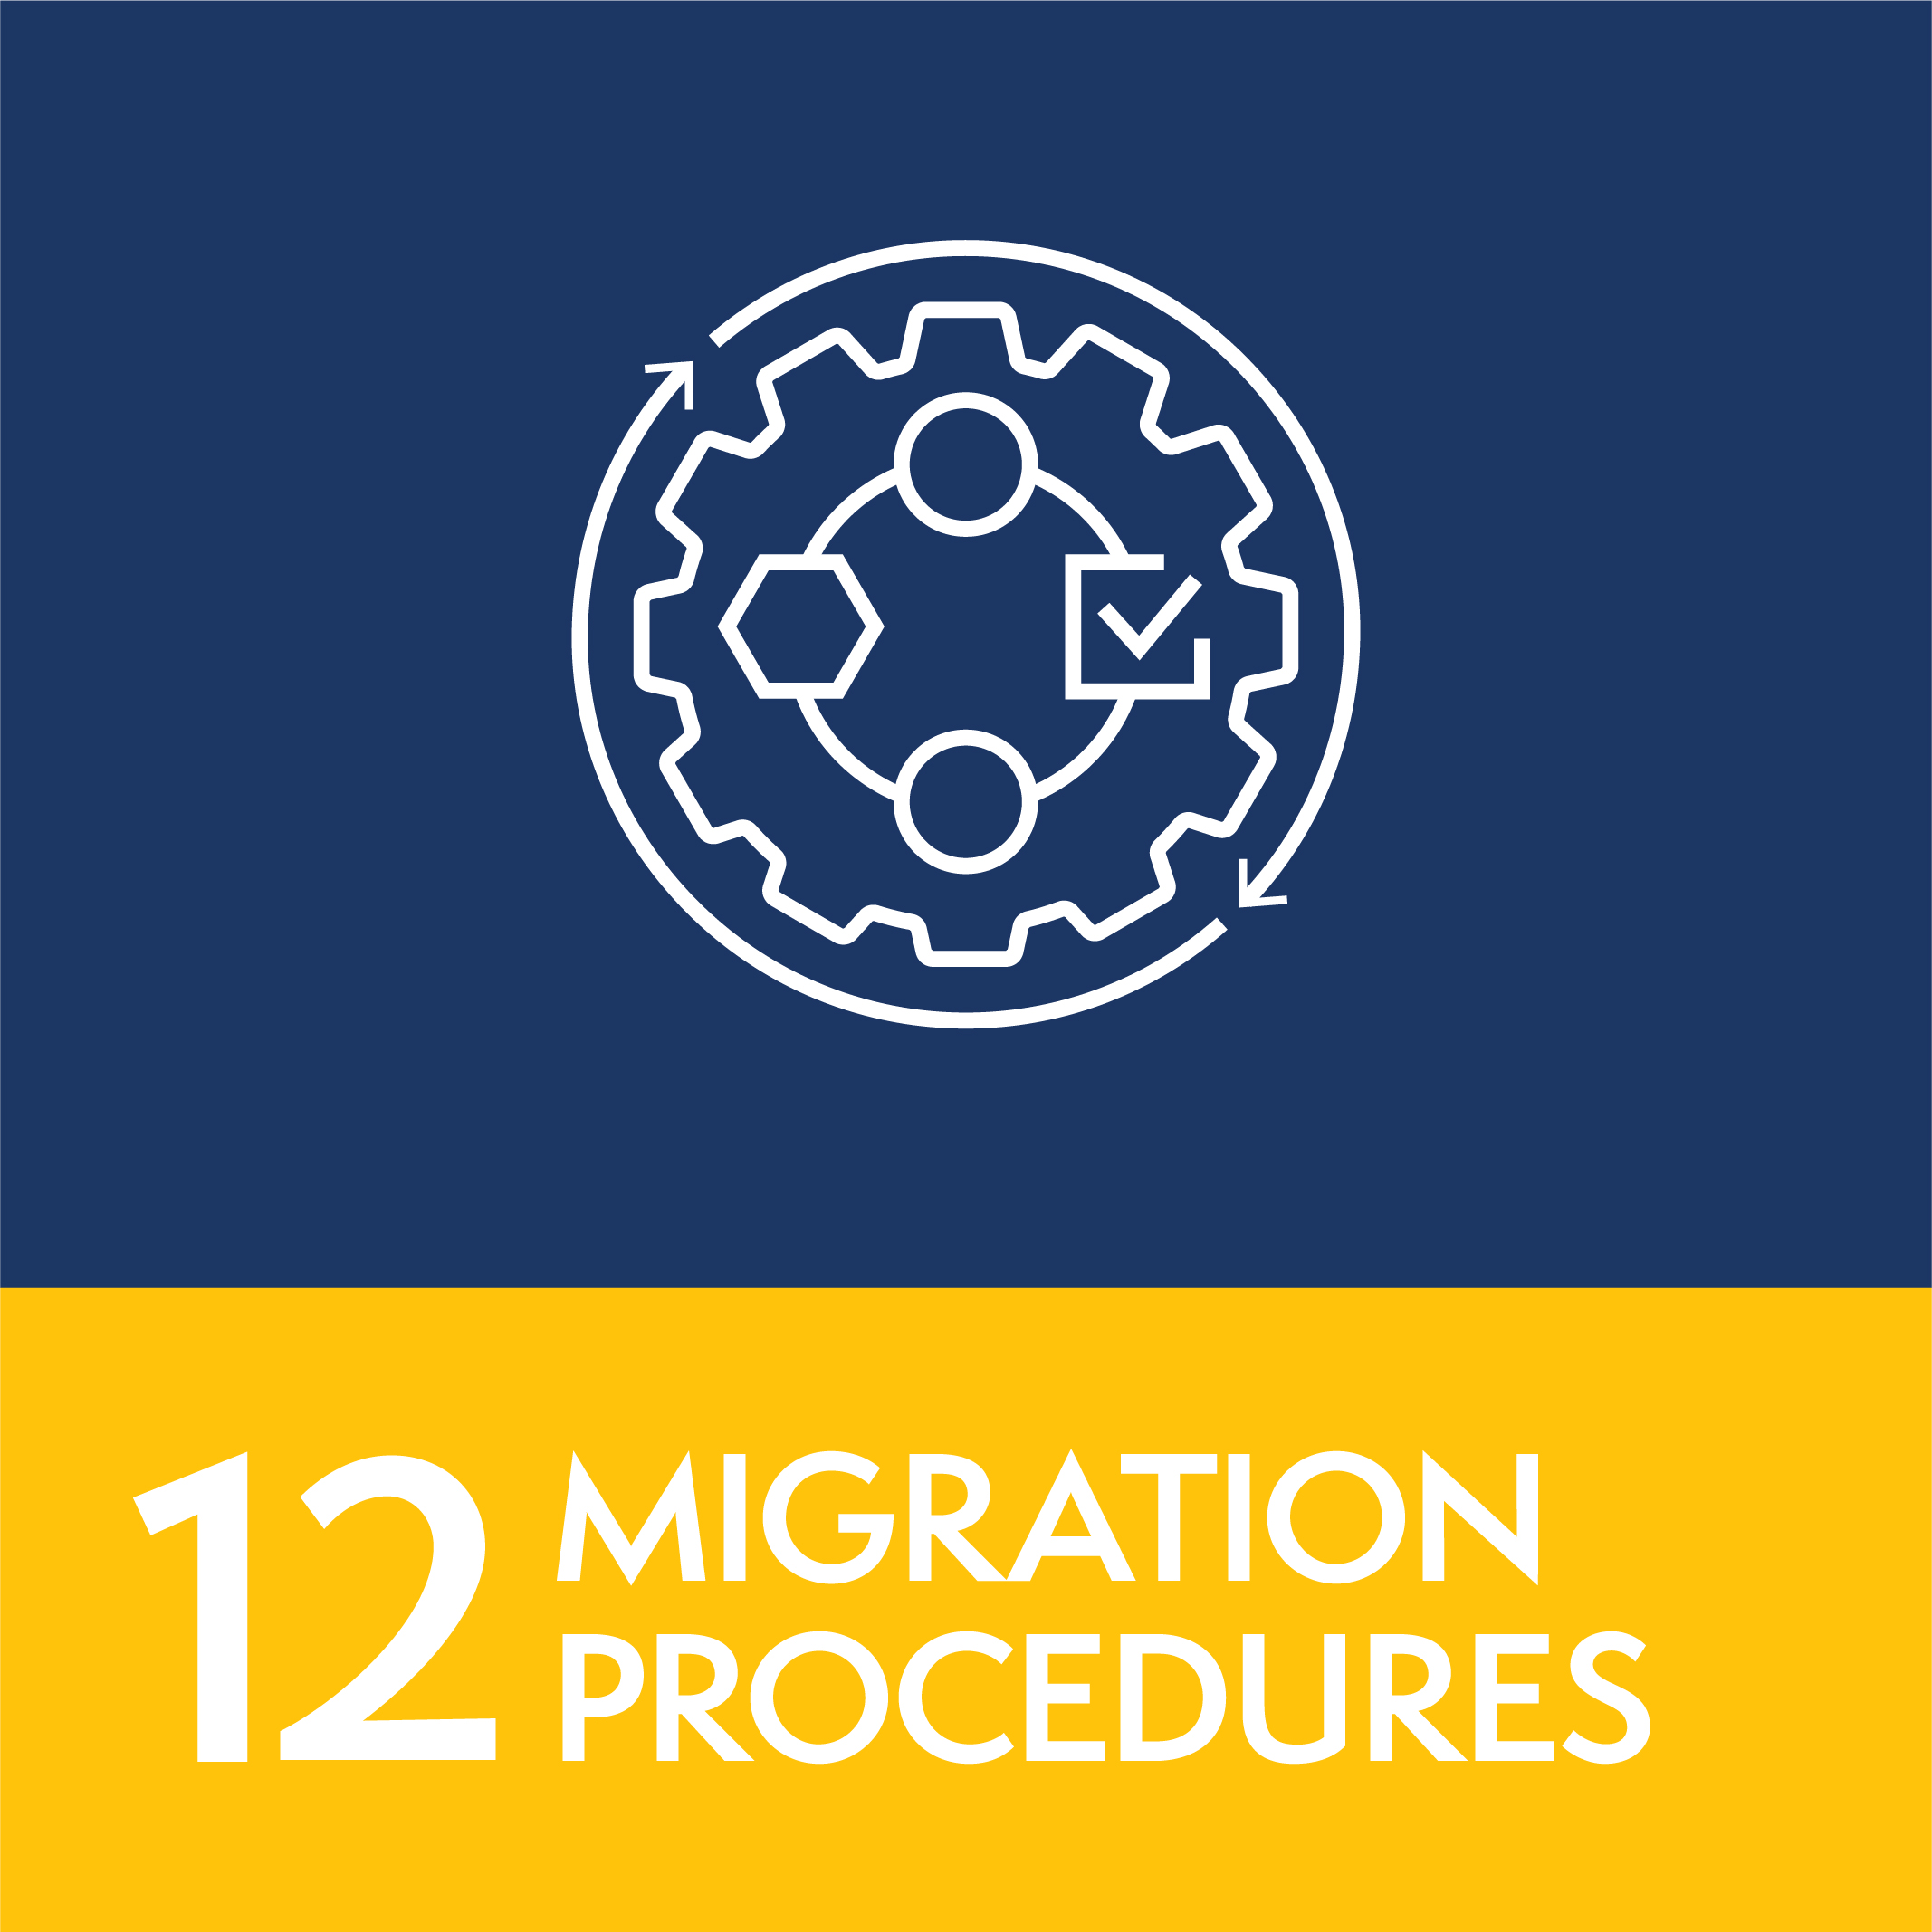 12 - Migration procedures